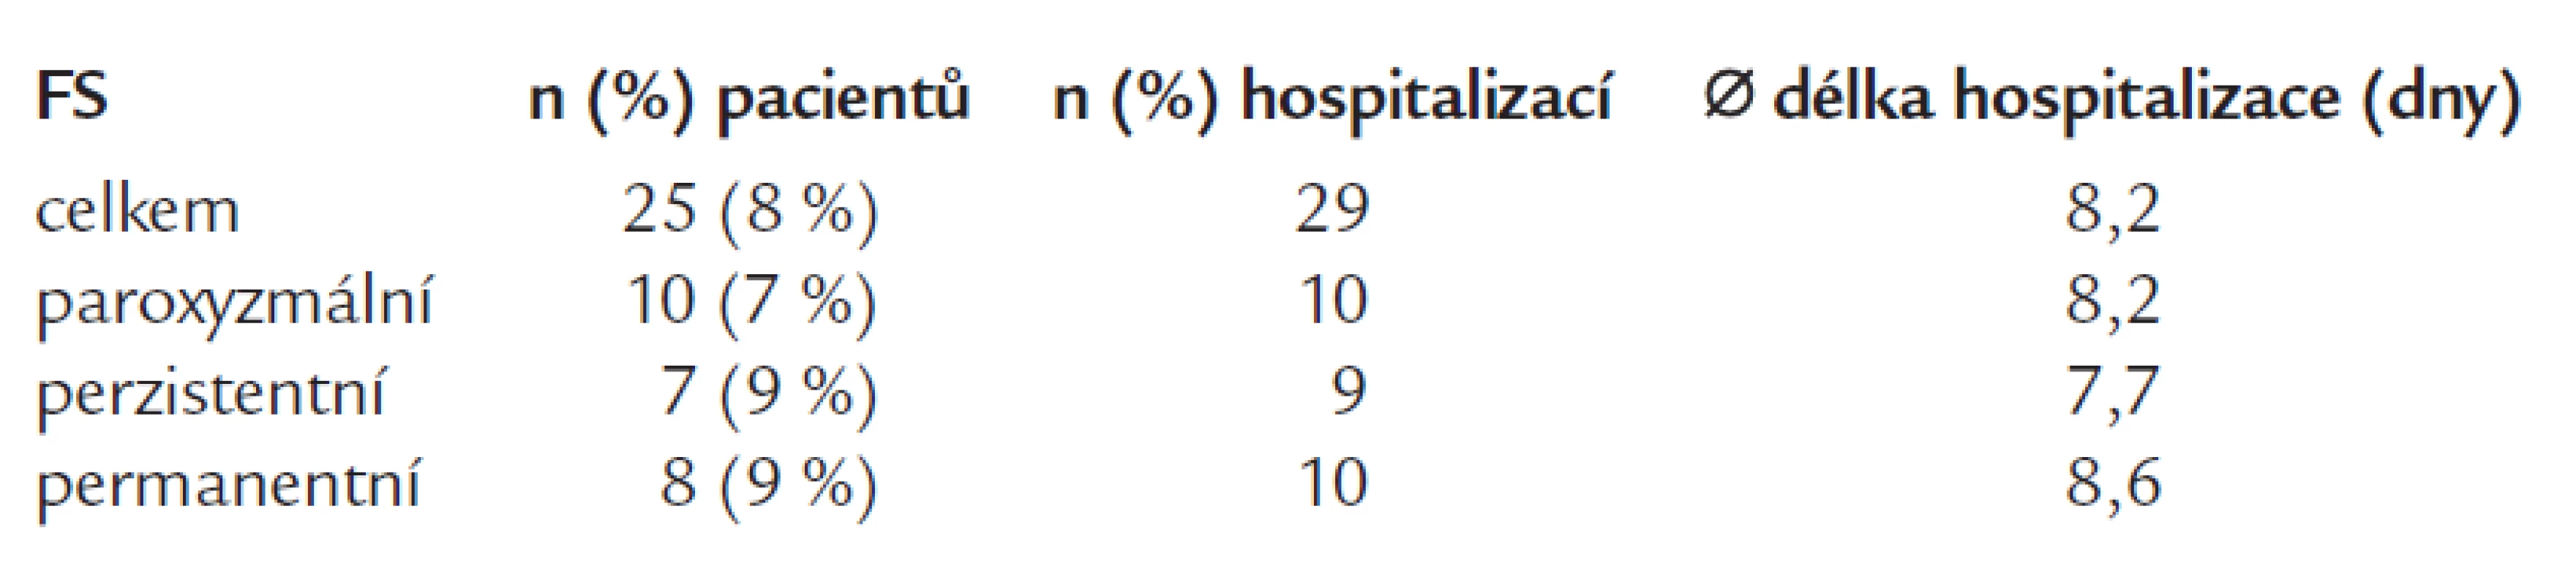 Hospitalizace z důvodu kardioembolizační příhody podle formy FS.